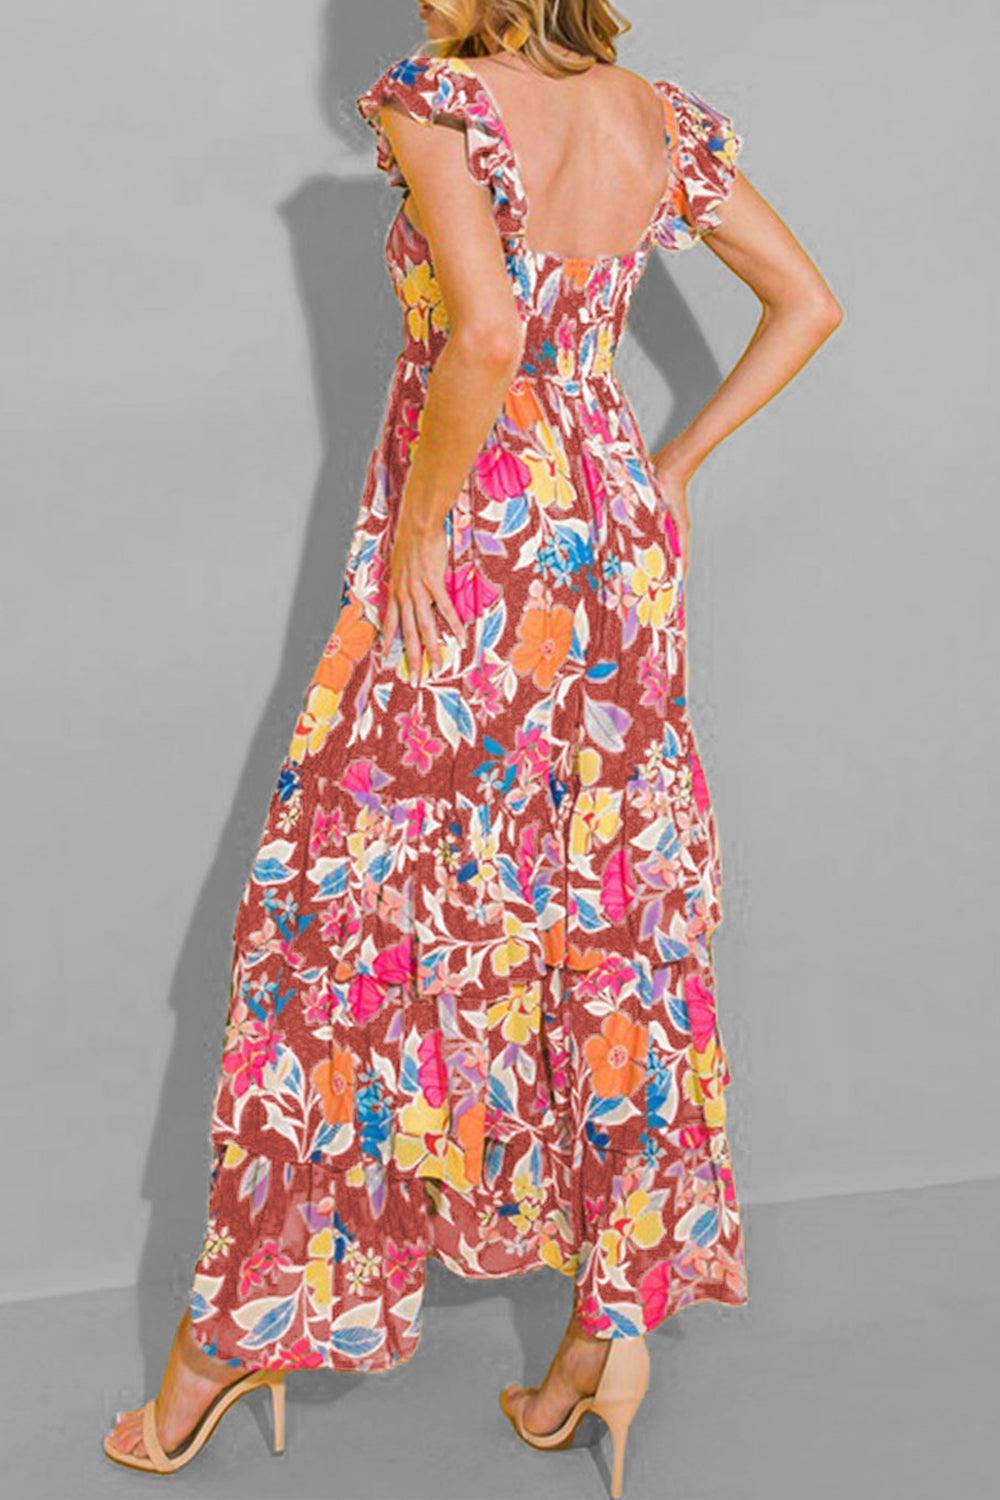 Tiered Ruffled Printed Sleeveless Dress - Immenzive